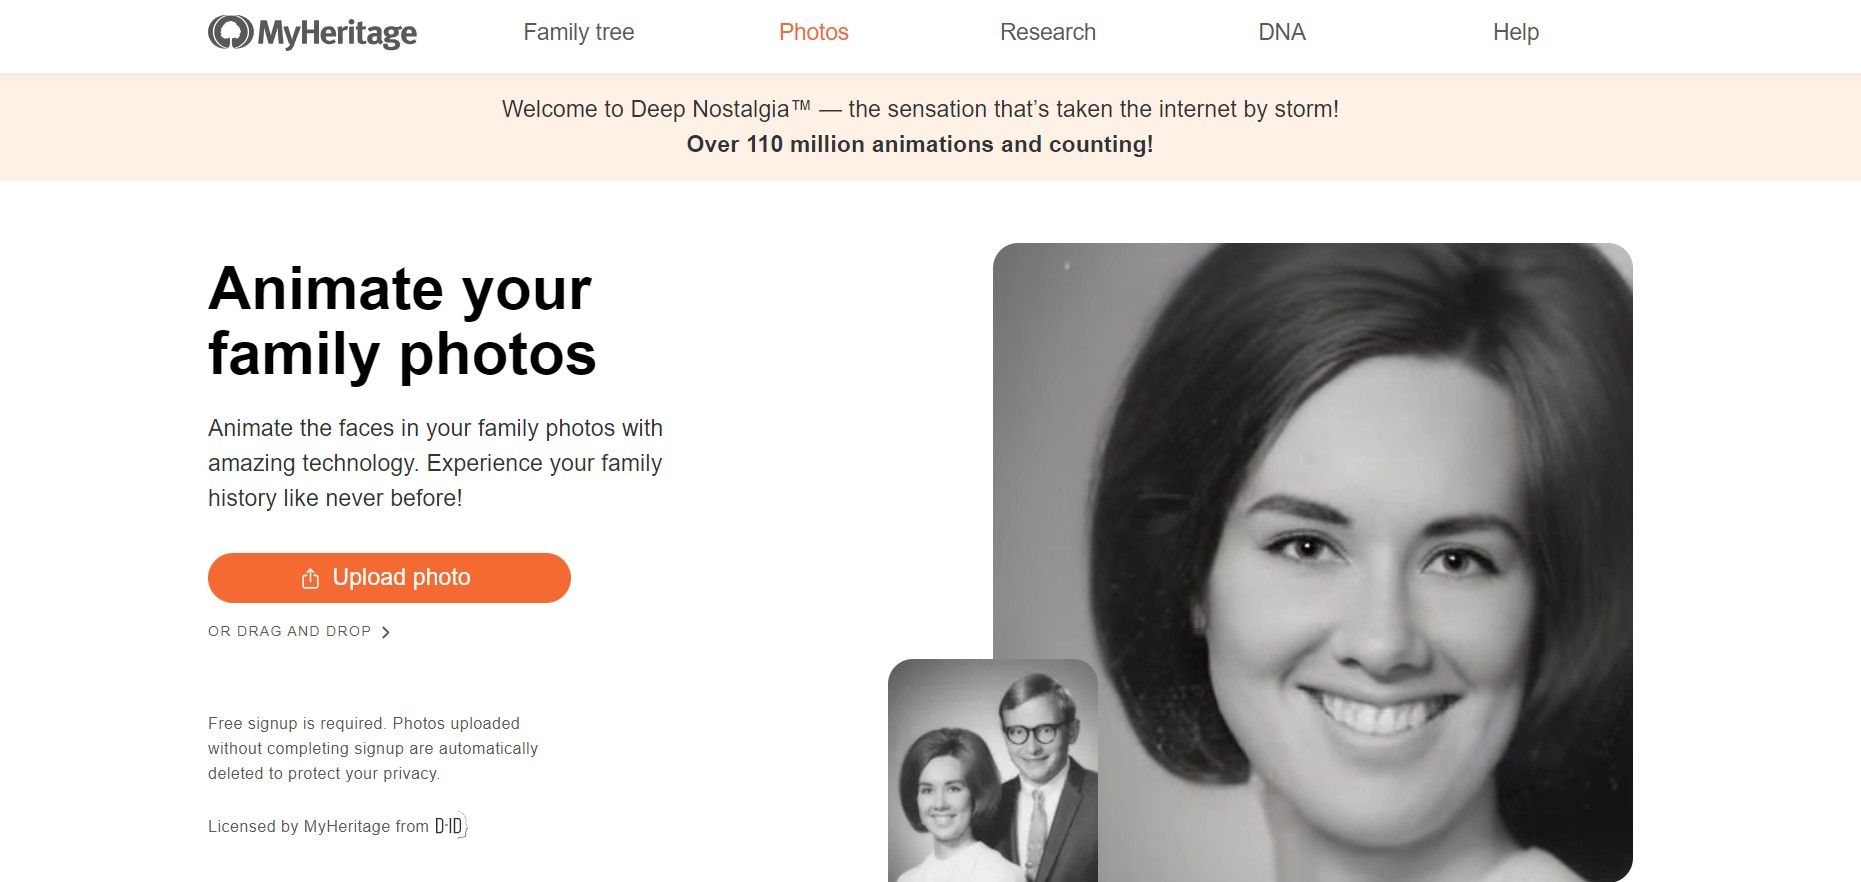 MyHeritage (Deep Nostalgia) - Photo Animation with Emotional Impact